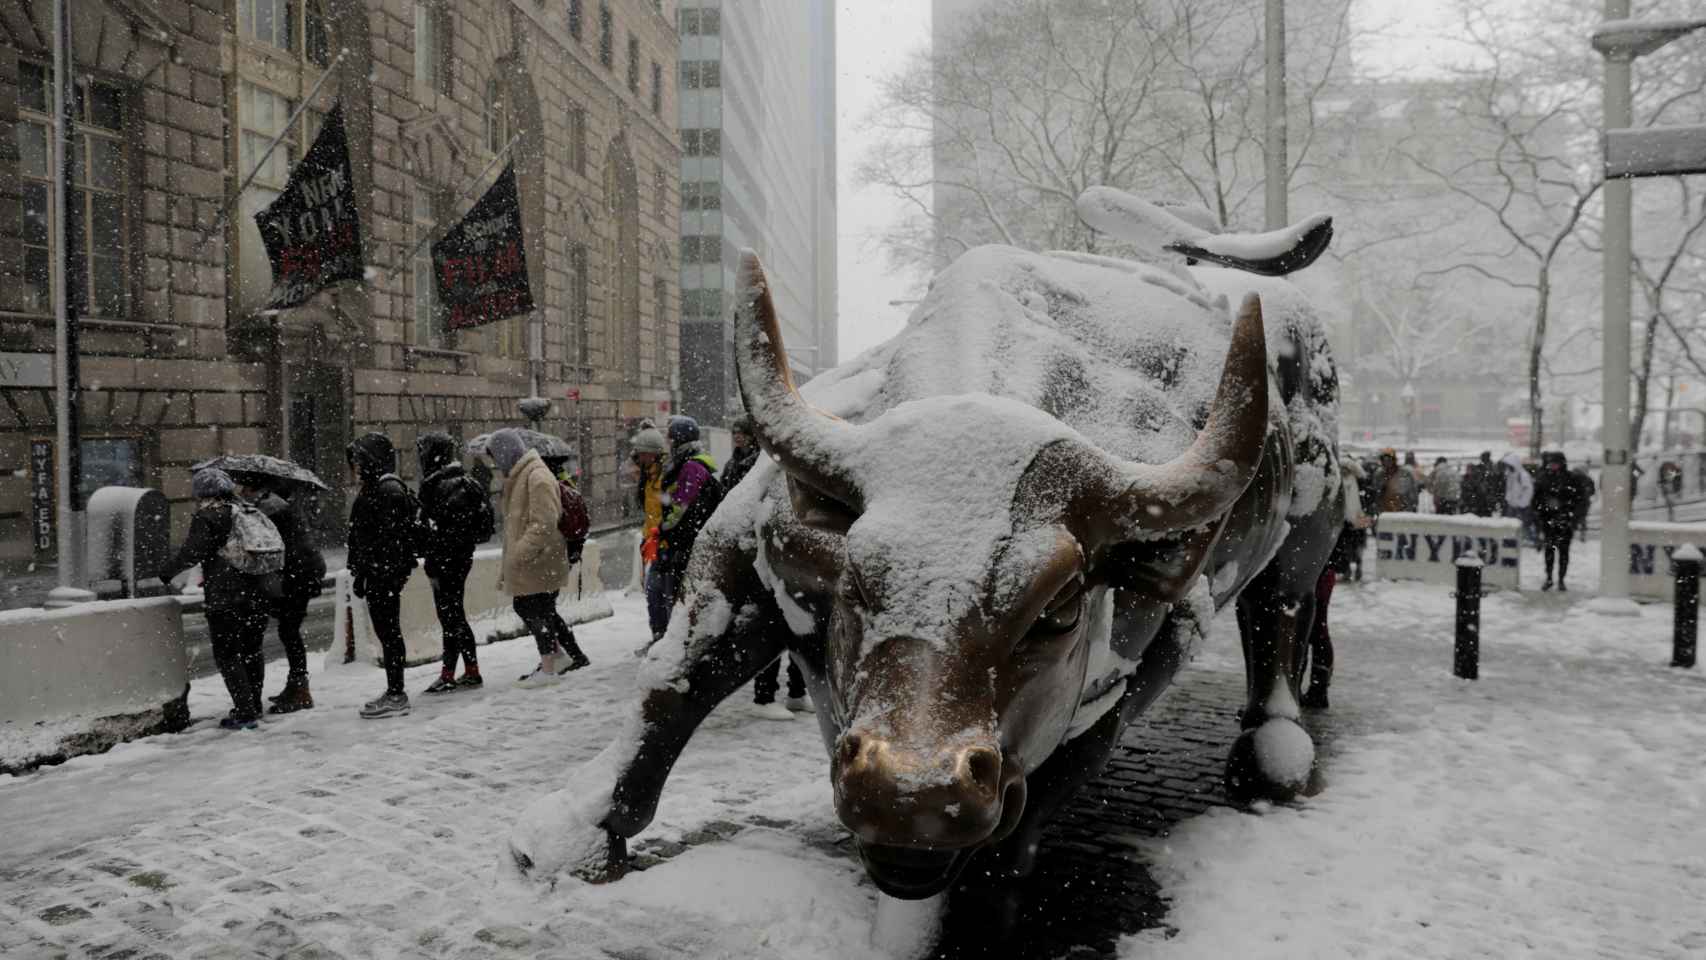 Refrescando los ánimos. La escultura del toro de Wall Street en Nueva York cubierta de nieve por la tormenta polar con la que ha comenzado la primavera. REUTERS/Lucas Jackson.